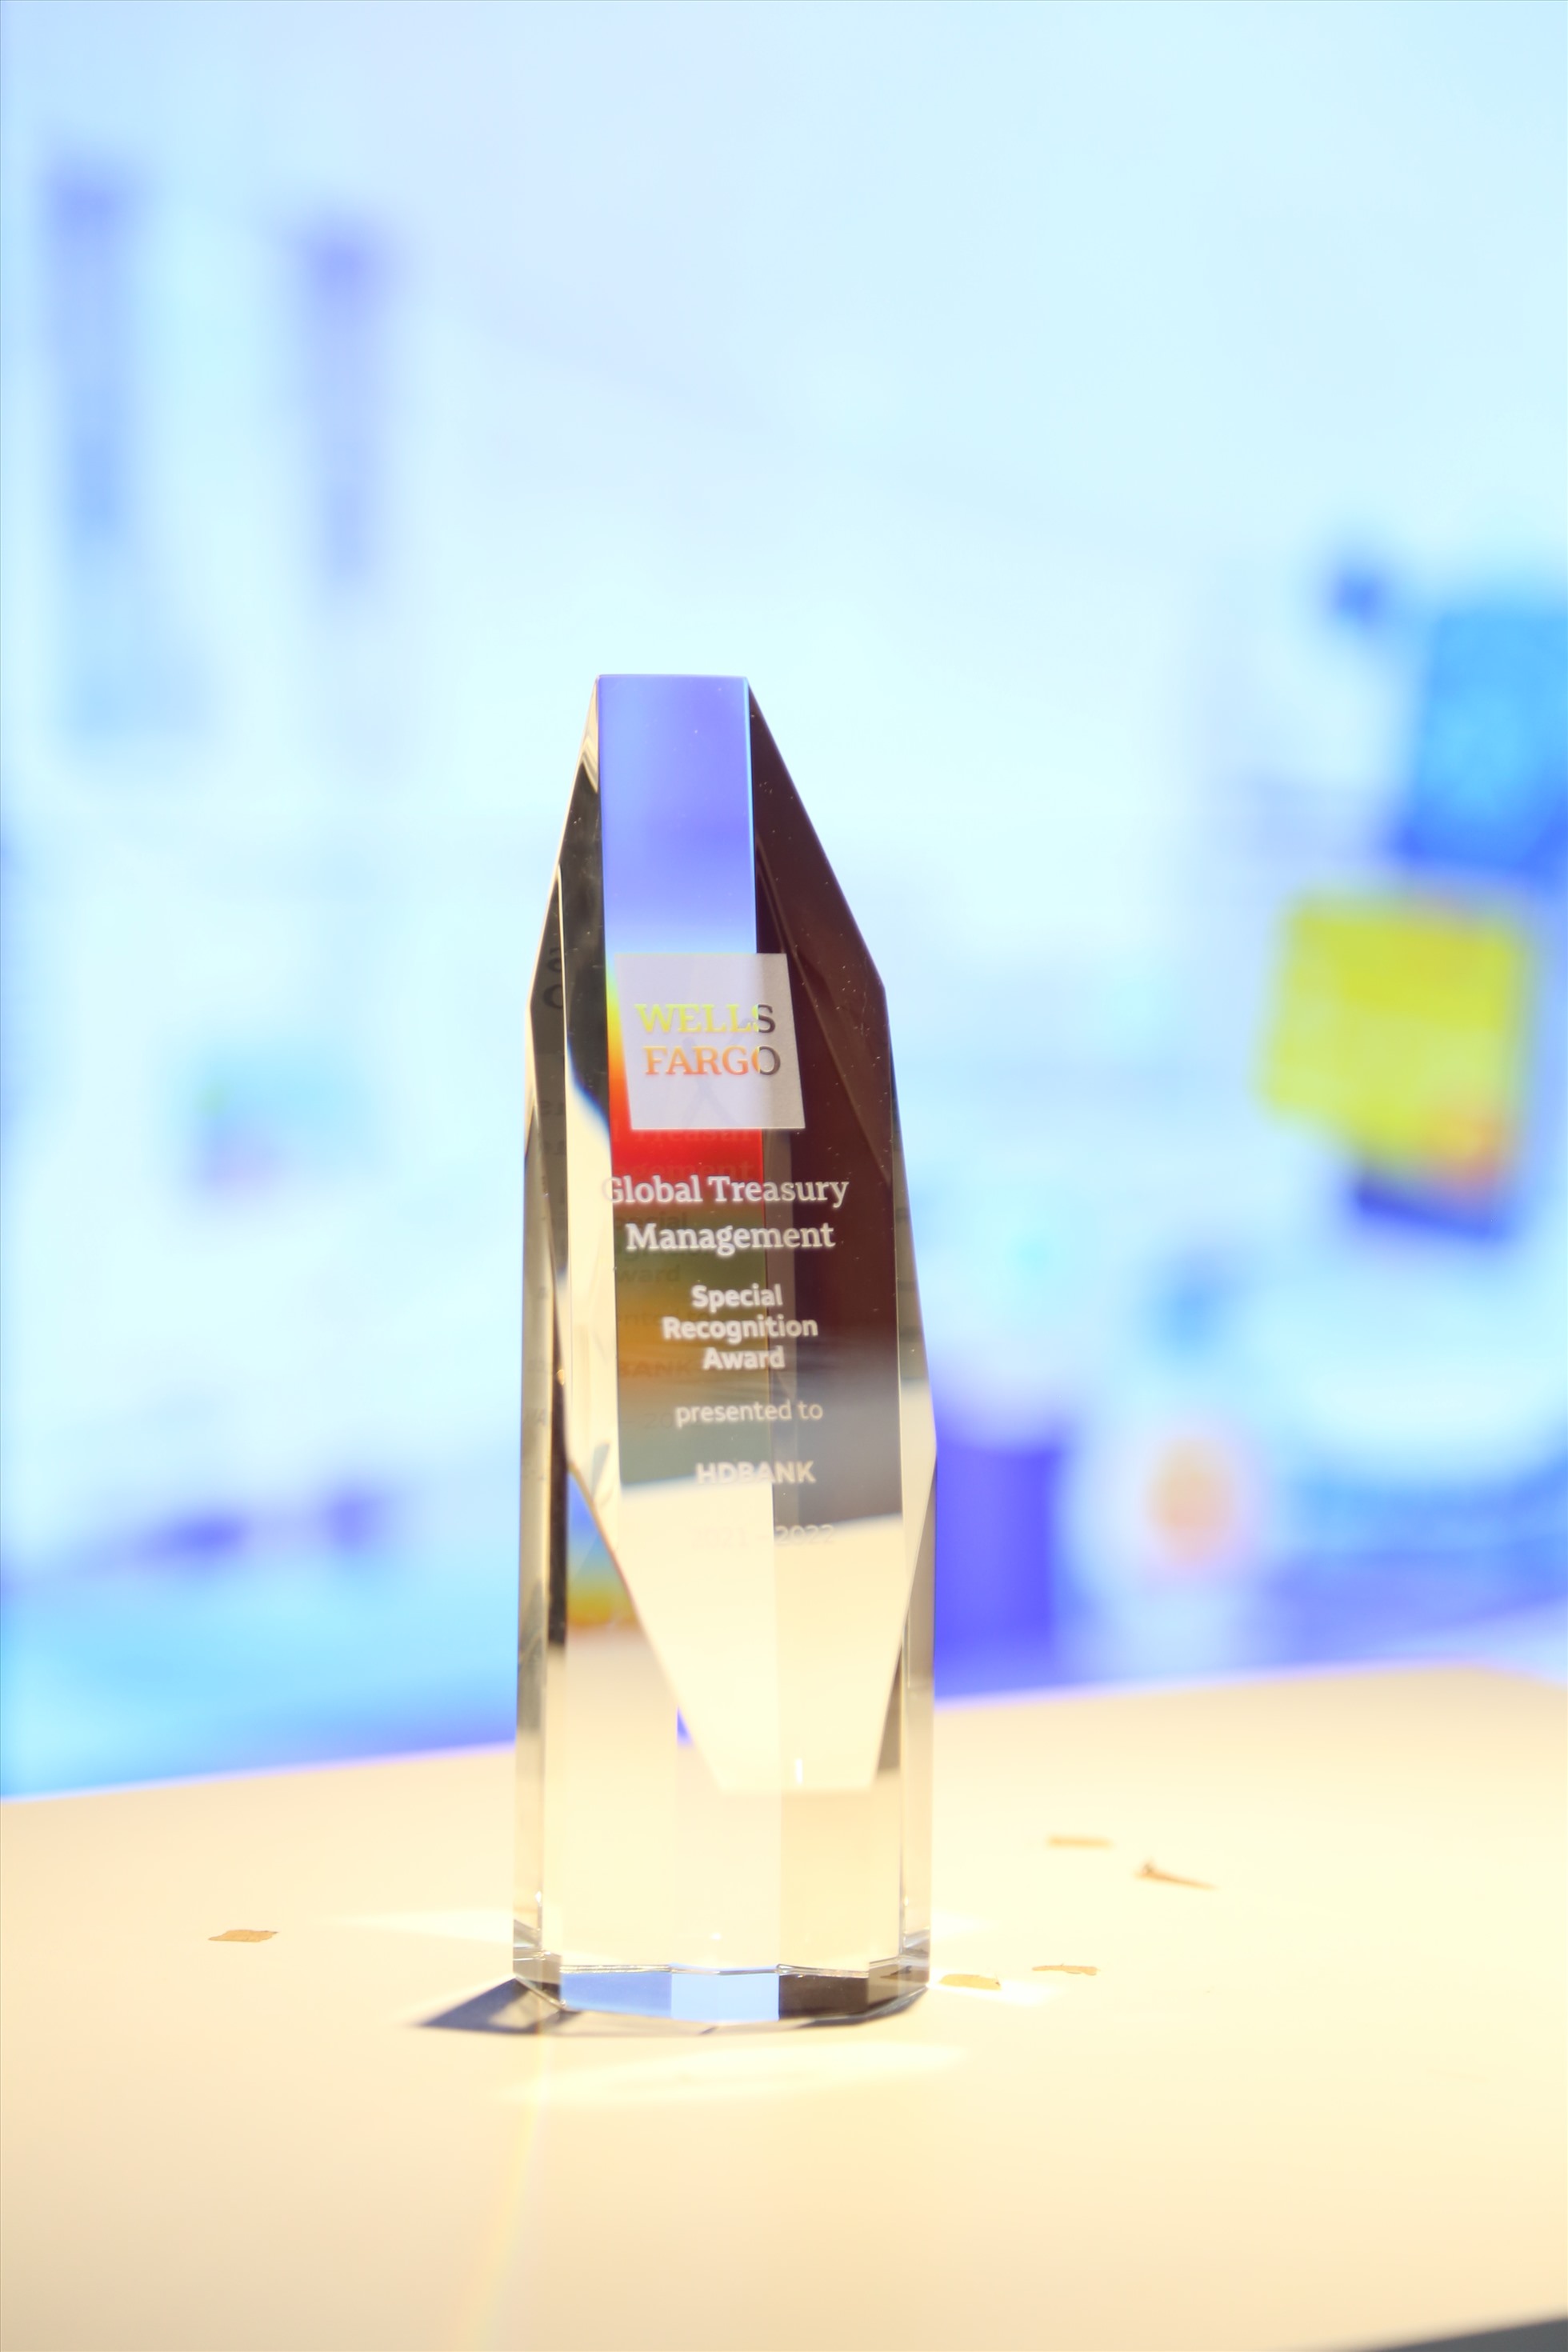 HDBank nhận giải thưởng đặc biệt chất lượng thanh toán quốc tế xuất sắc do Wells Fargo trao tặng. Nguồn: HDBank